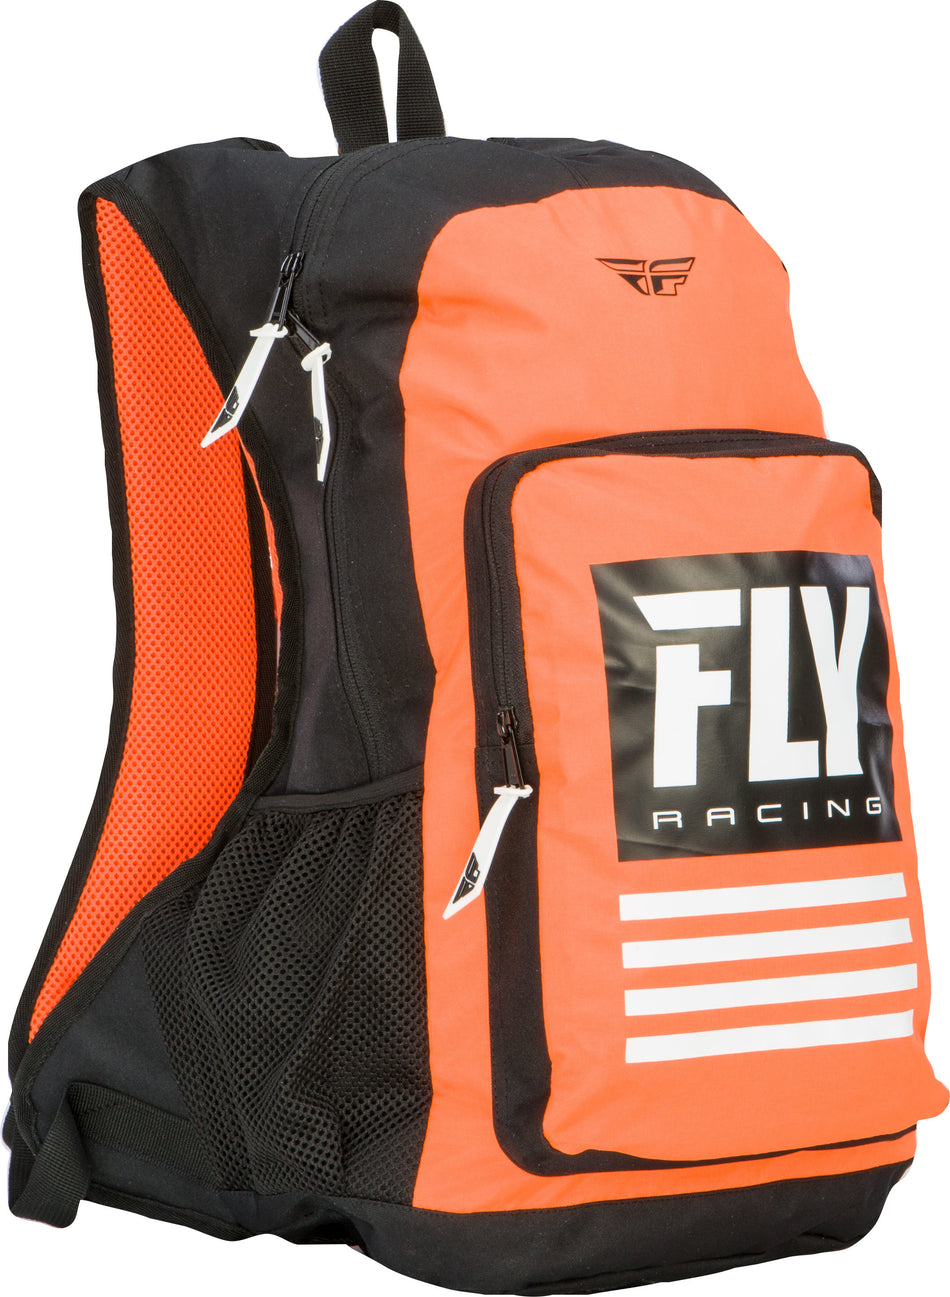 FLY RACING Jump Pack Backpack Orange/Black 28-5145